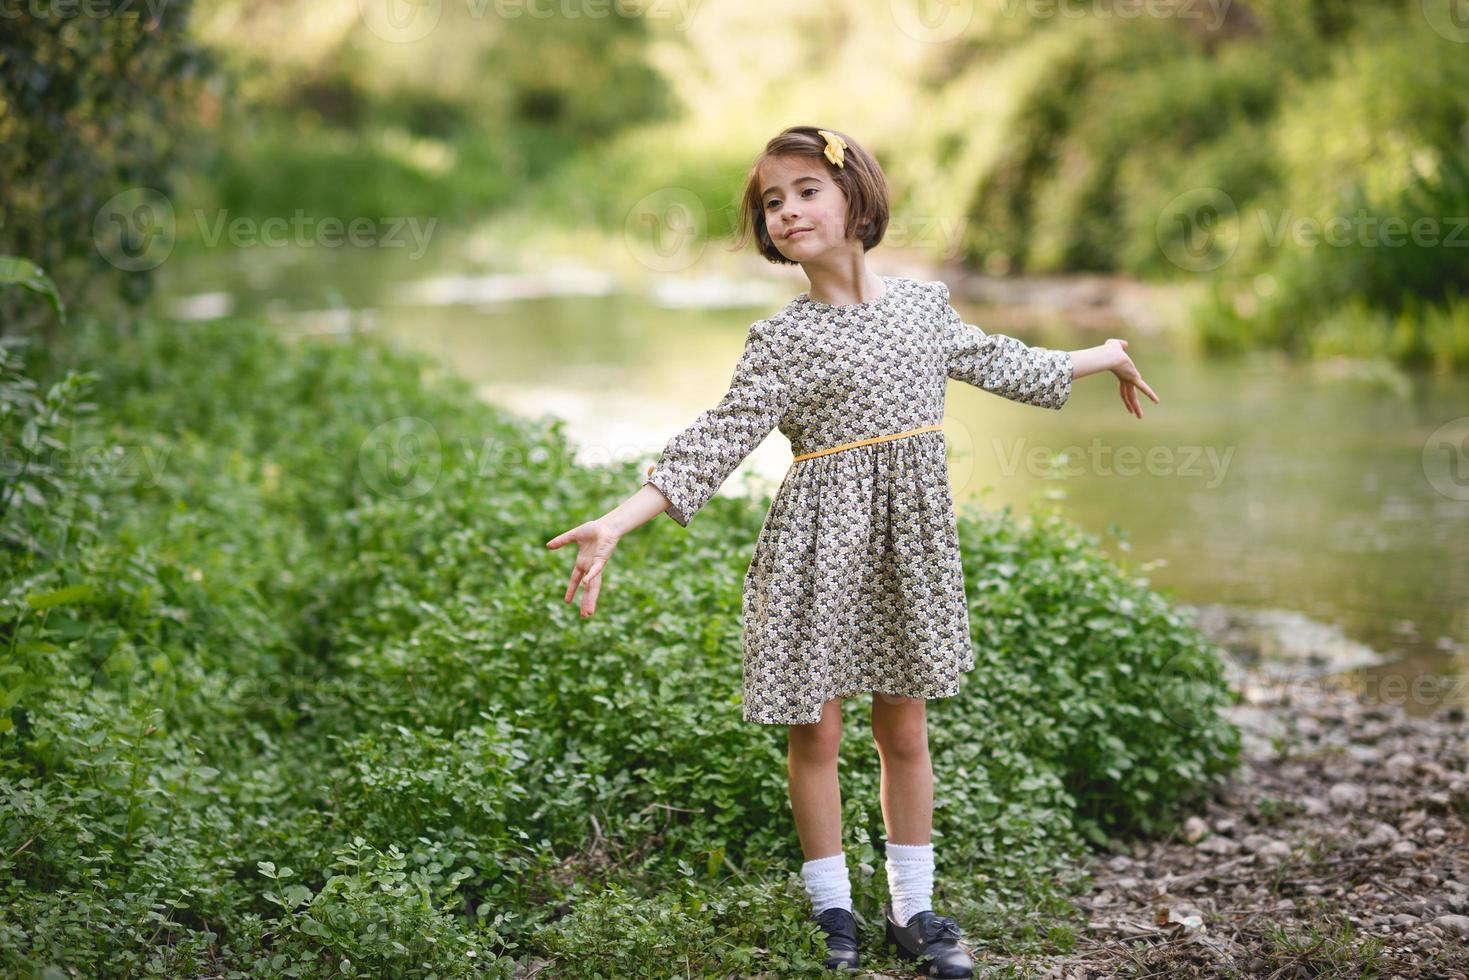 menina no riacho da natureza com um lindo vestido foto